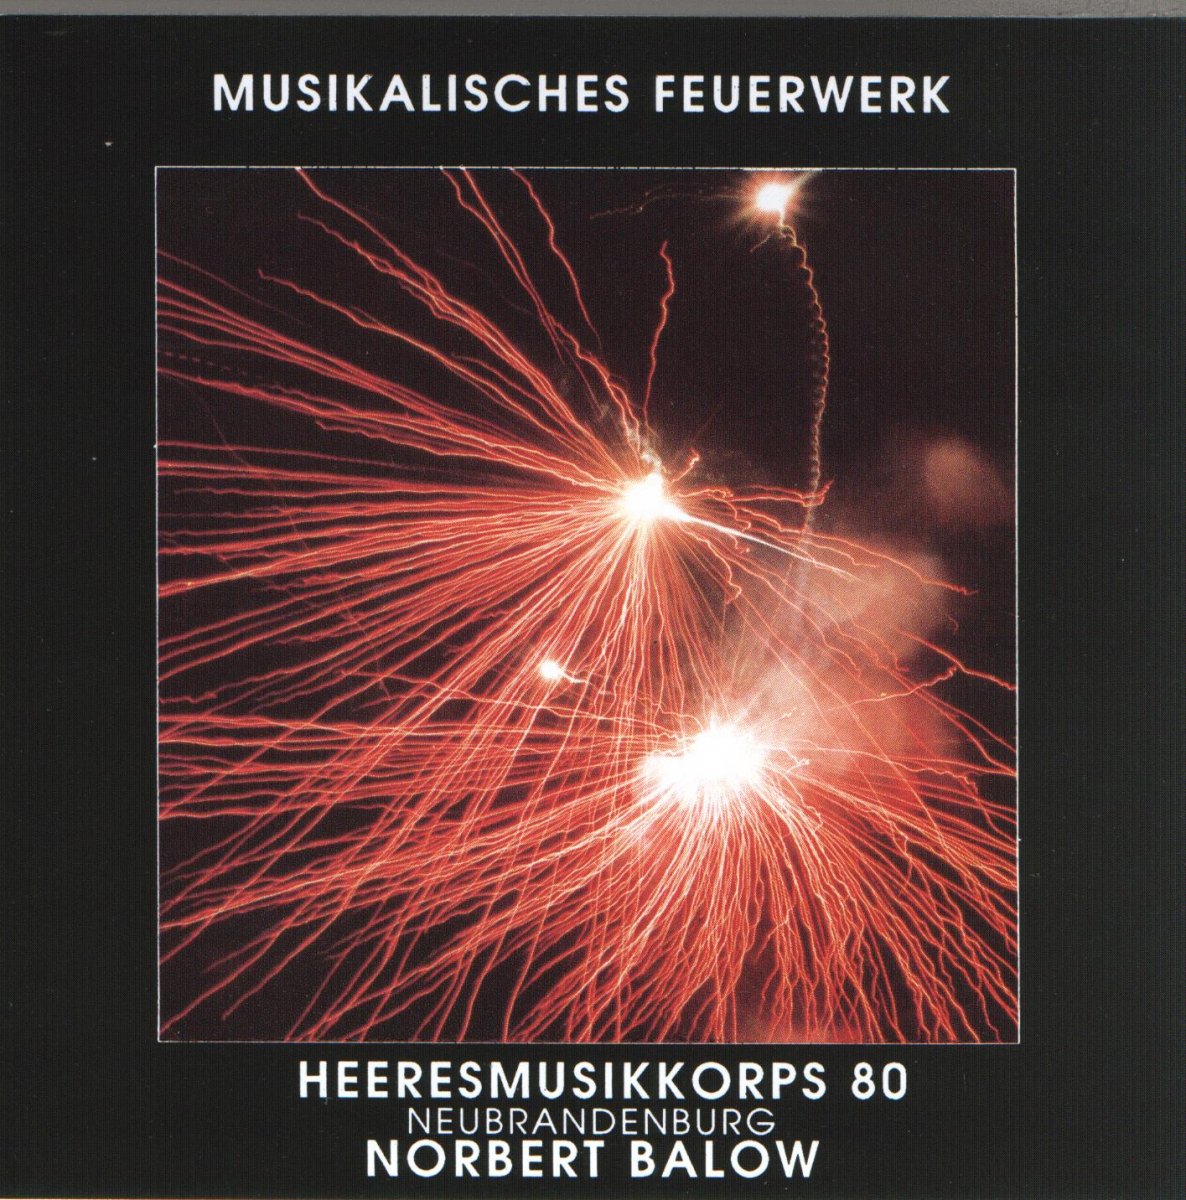 Musikalisches Feuerwerk - click here